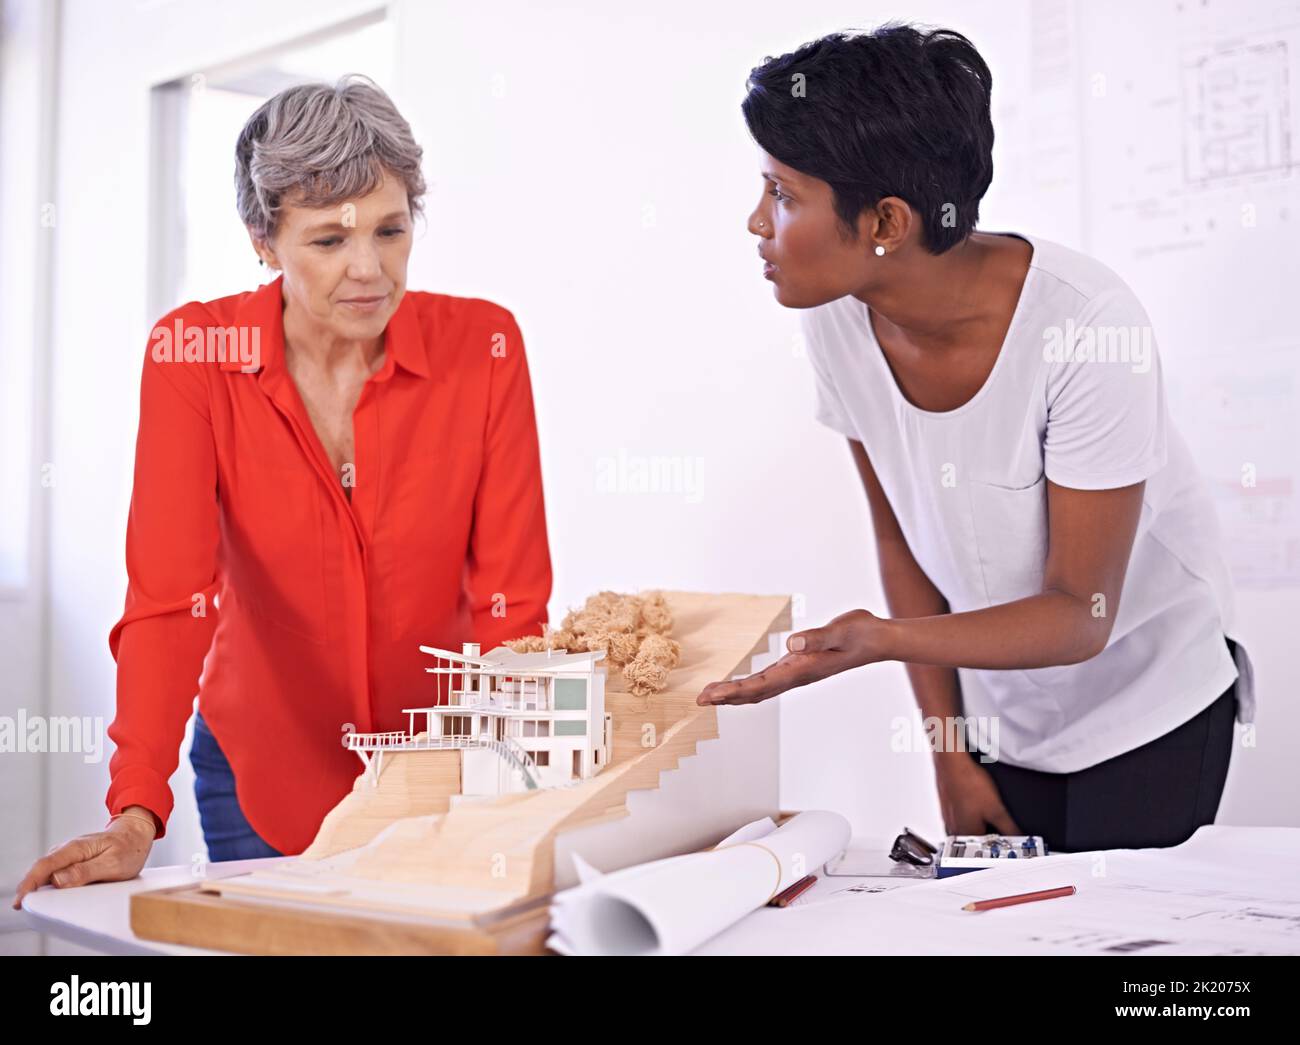 Glauben Sie, wir sollten Anpassungen vornehmen. Zwei weibliche Architekten diskutieren ein Architekturmodell. Stockfoto